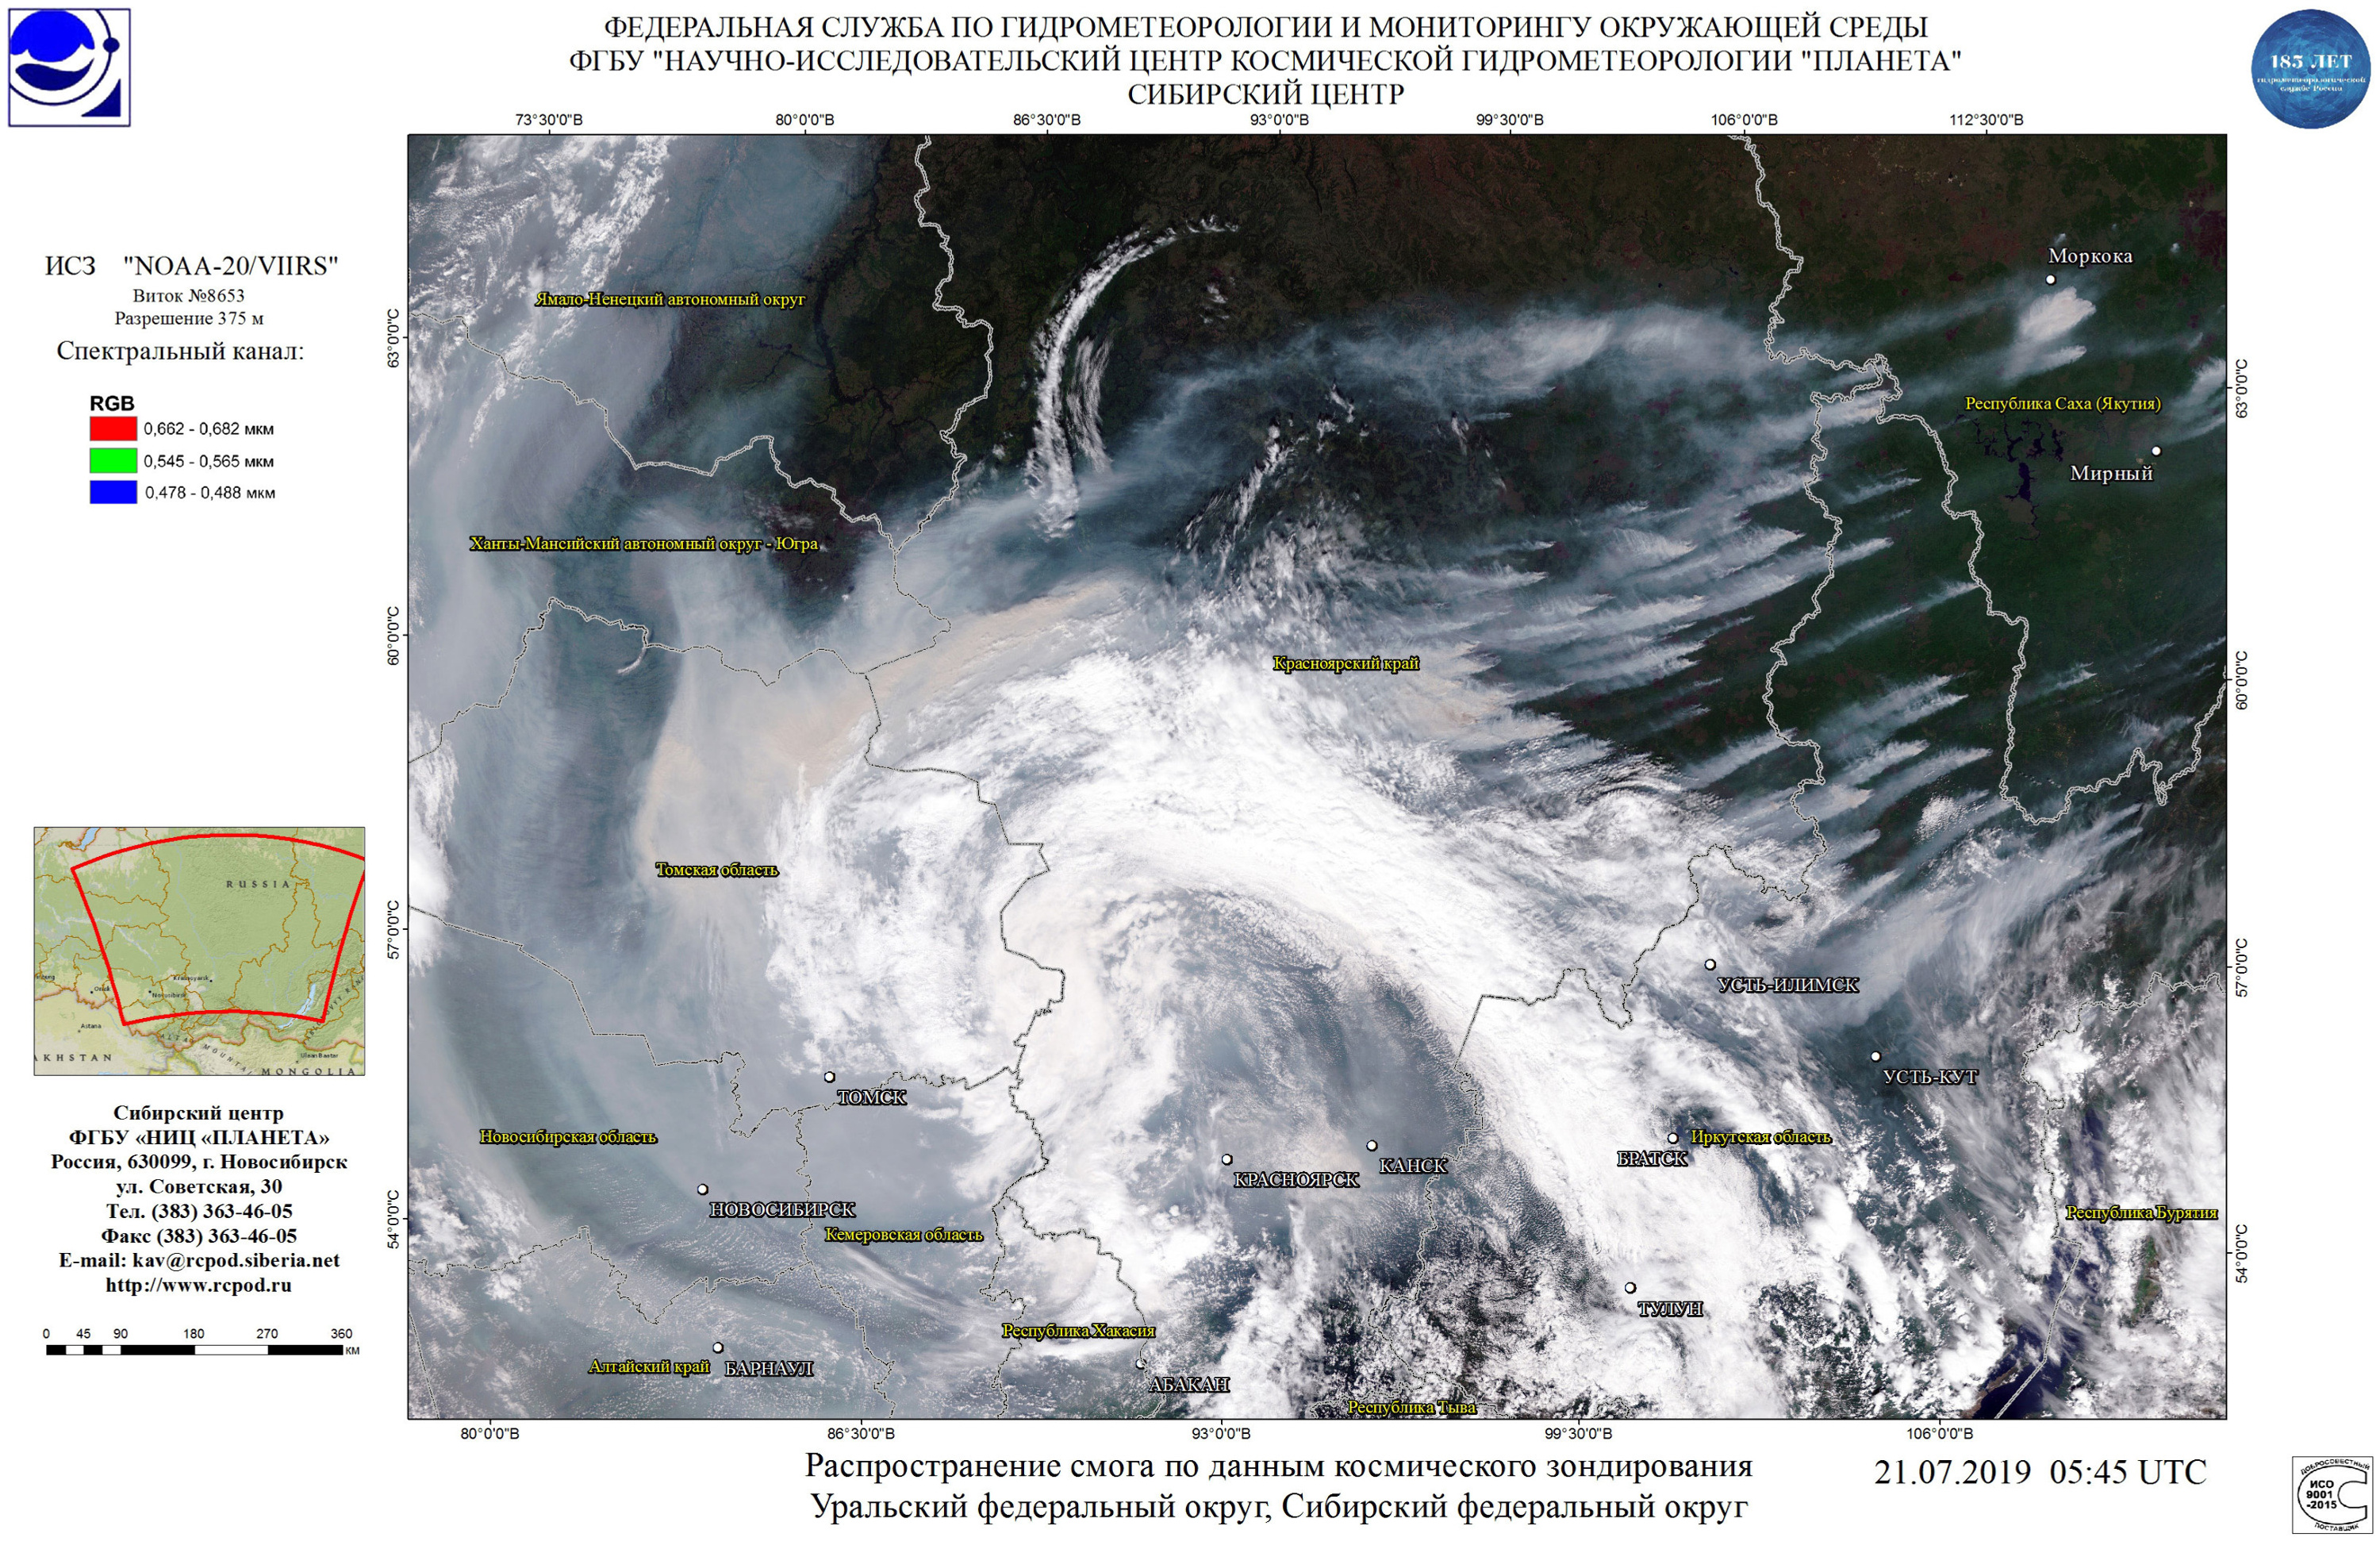 Со спутника смог над Новосибирском выглядит устрашающе